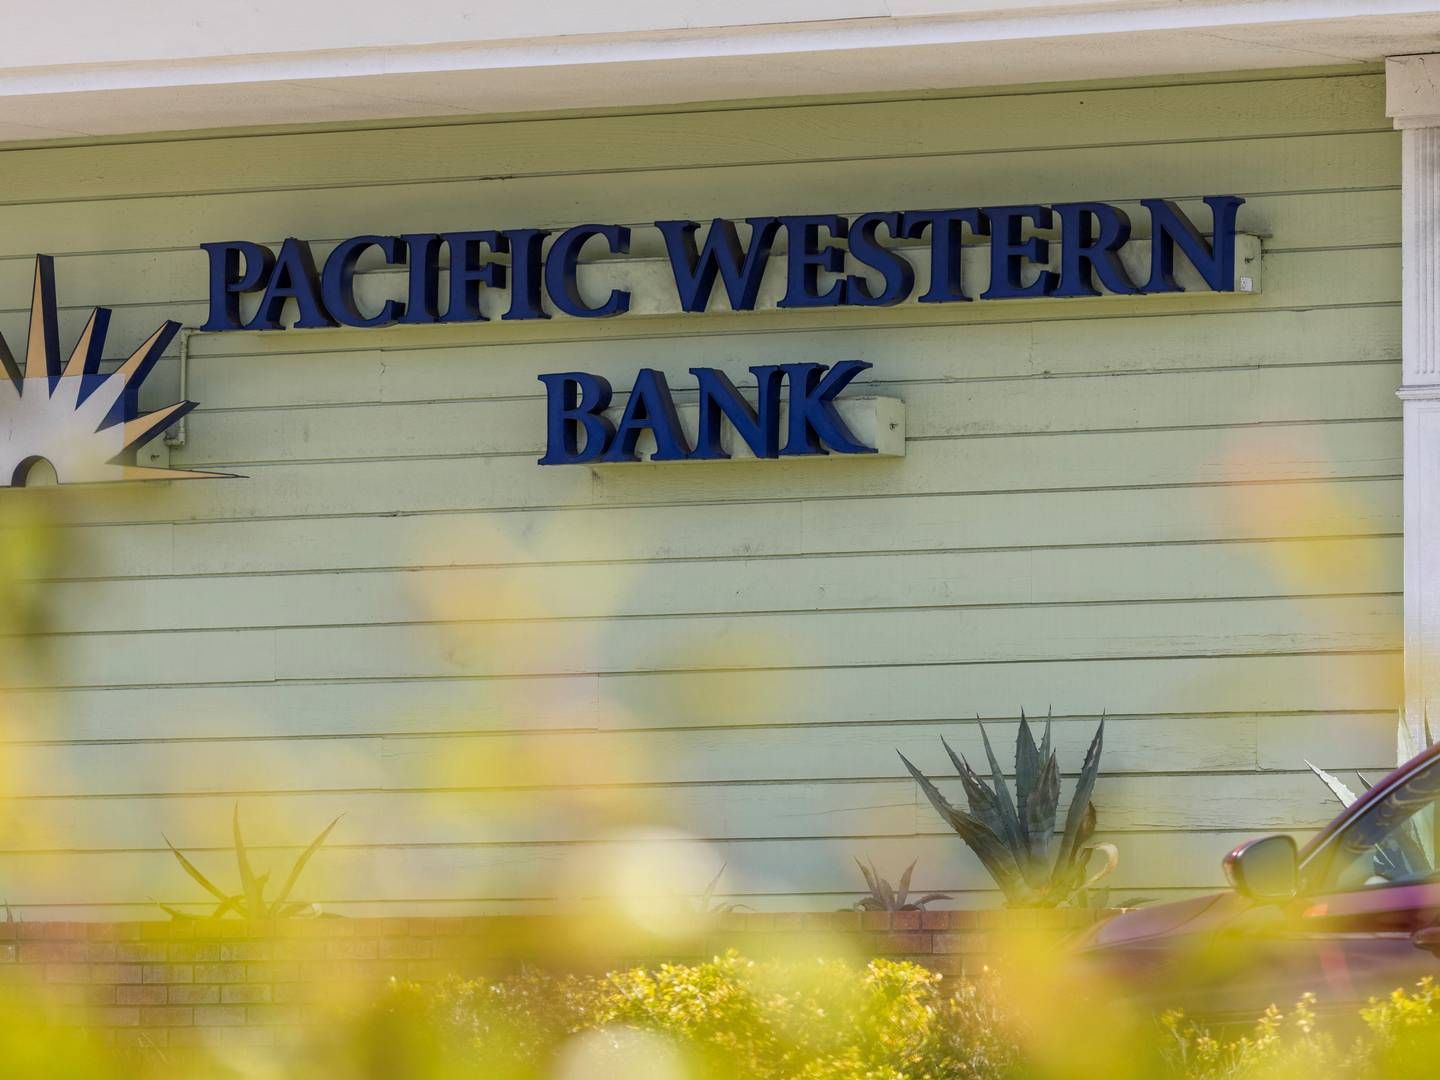 Pacific Western bank og Western Alliance har fået store kursklø tirsdag og det har givet anledning til børspause. | Foto: Mike Blake/Reuters/Ritzau Scanpix